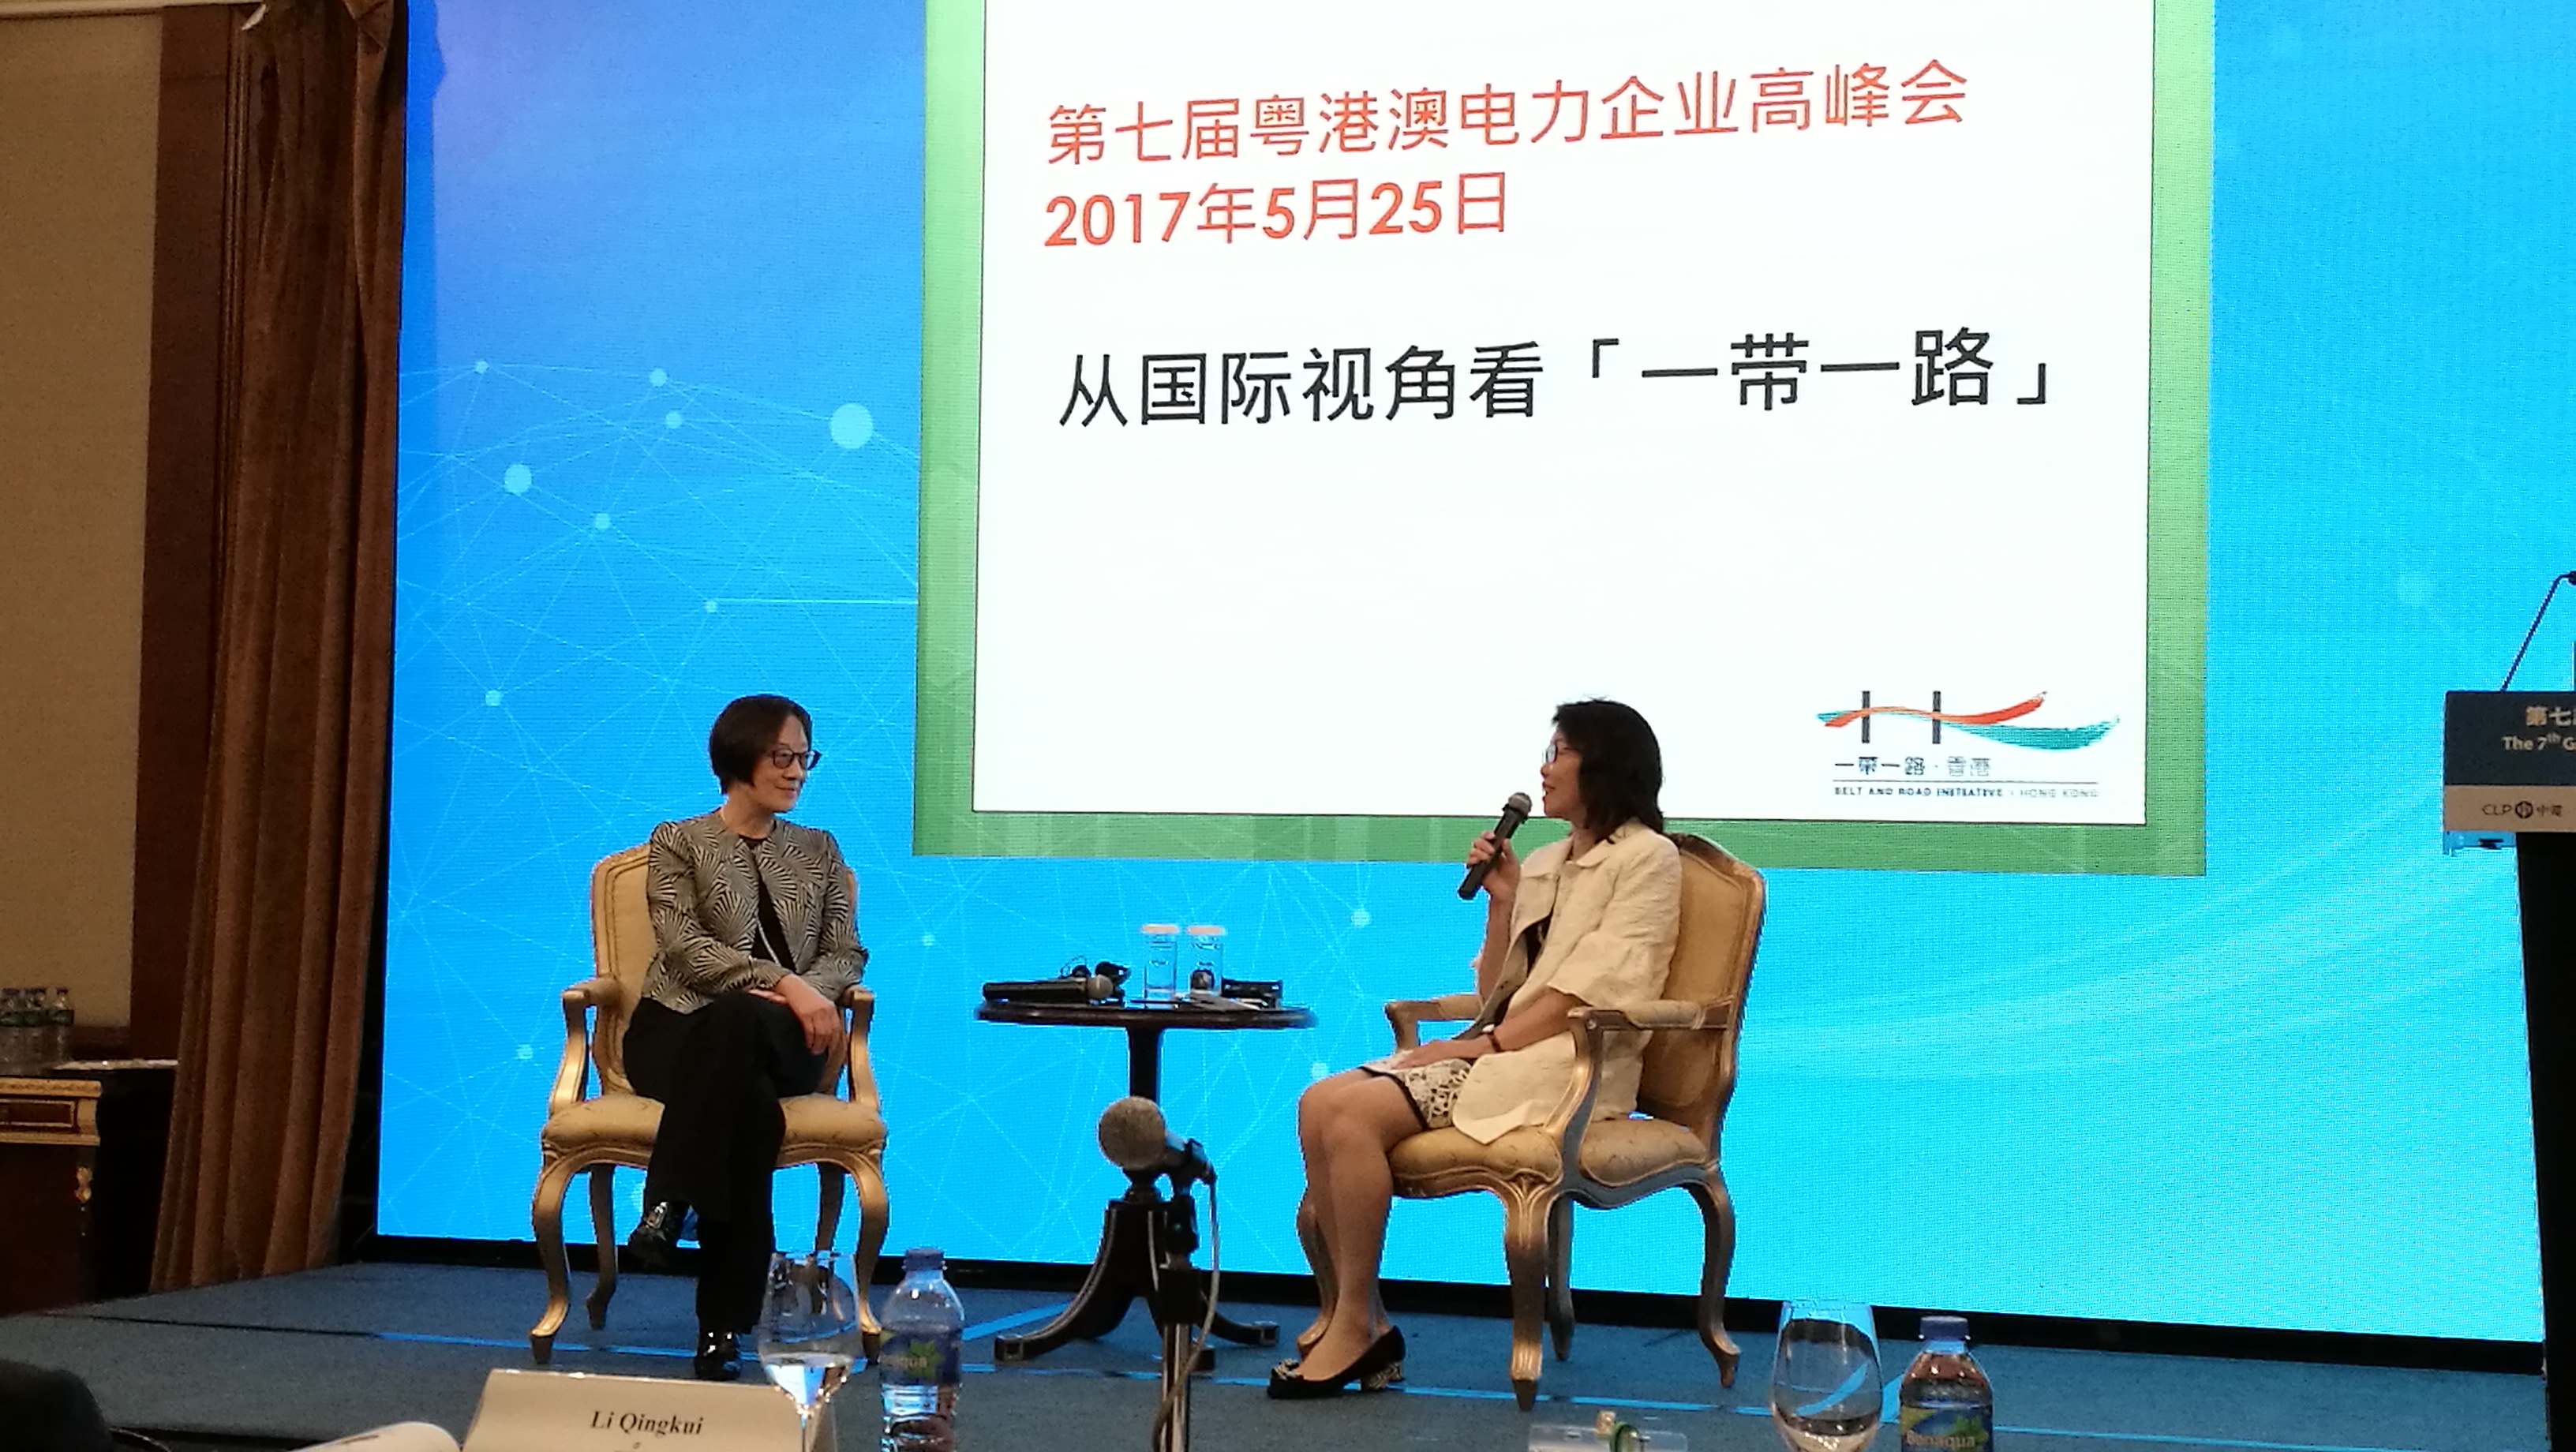 「一带一路」专员（左）今日（五月二十五日）出席第七届粤港澳电力企业高峰会，以 “从国际视角看「一带一路」” 为题进行演讲，并在演讲后参与中华电力副主席阮苏少湄女士（右）主持的答问讨论环节。